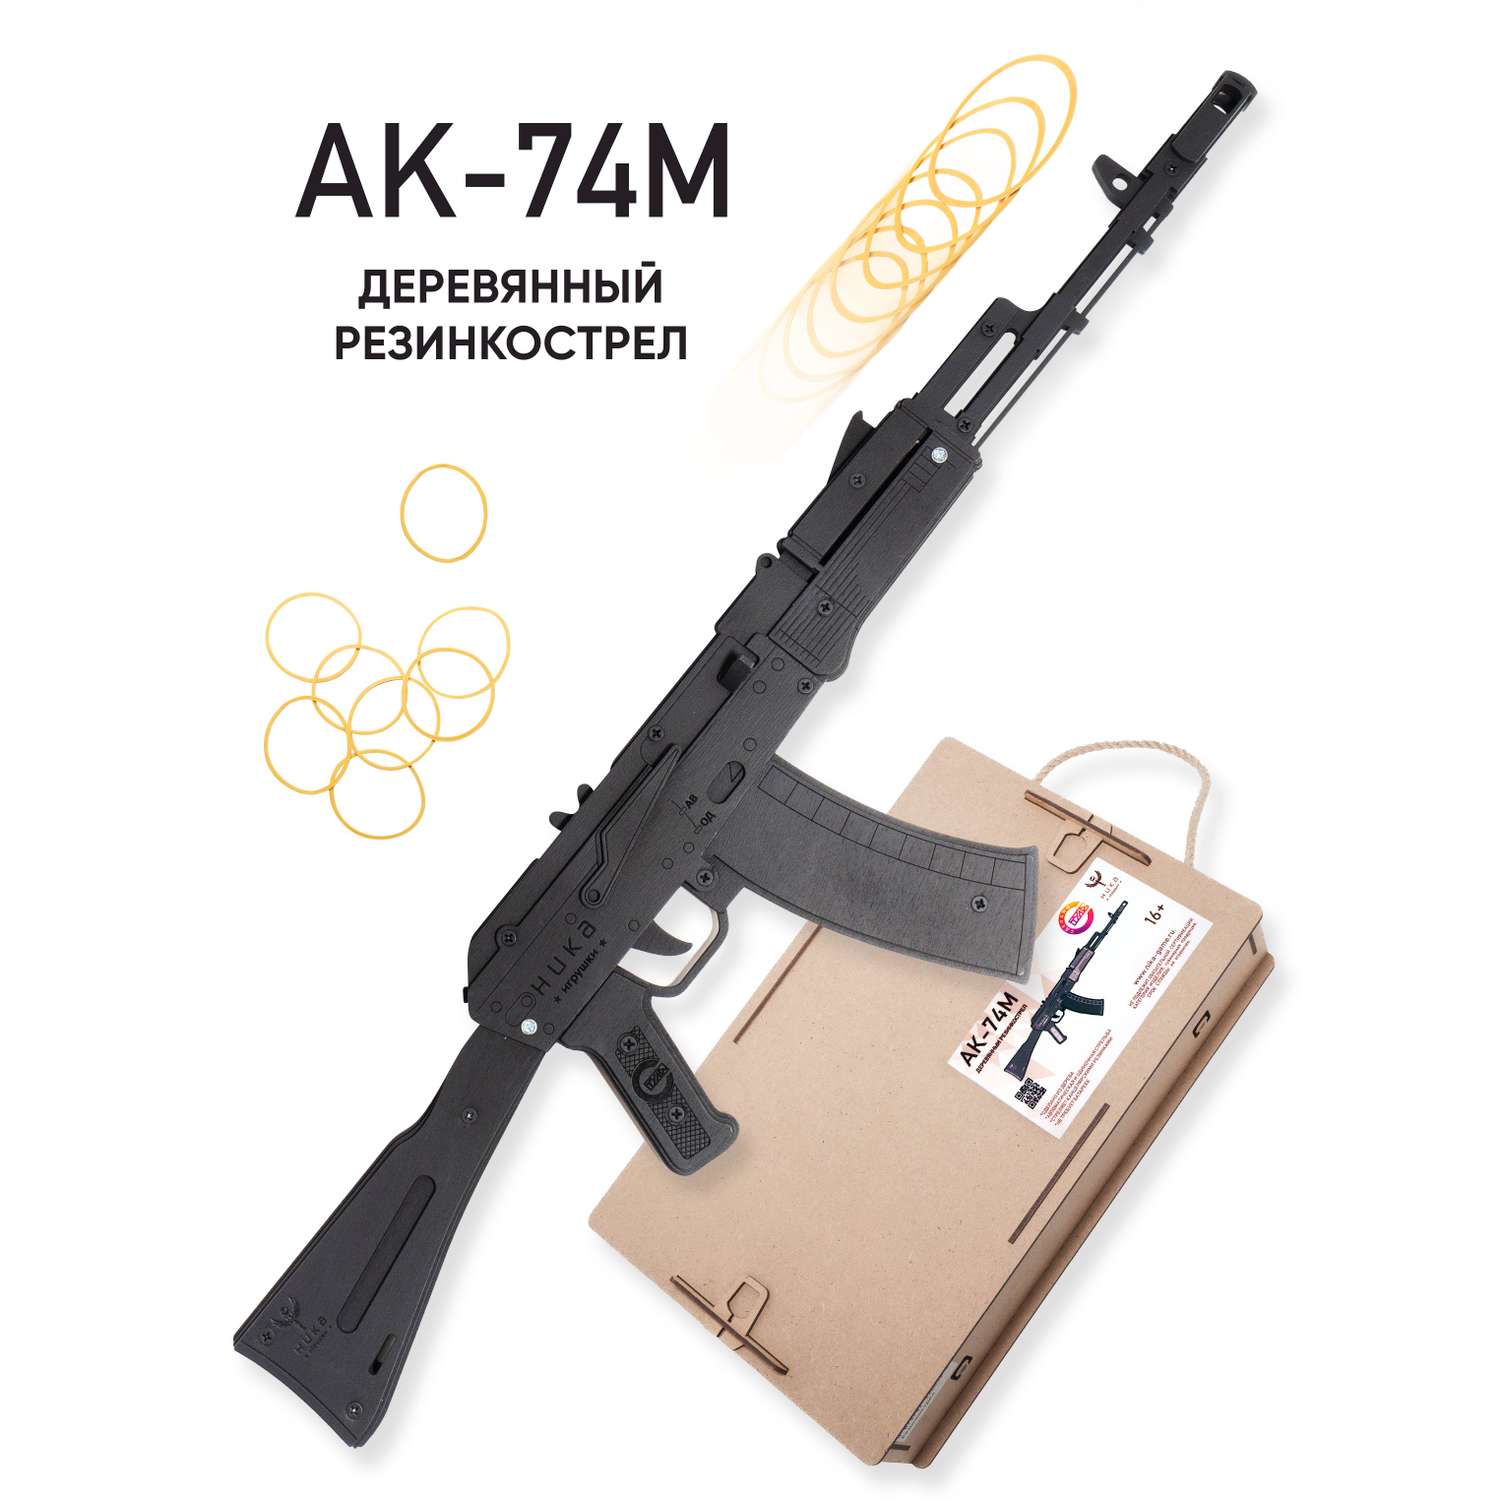 Резинкострел НИКА игрушки Автомат АК-74М в подарочной упаковке - фото 1